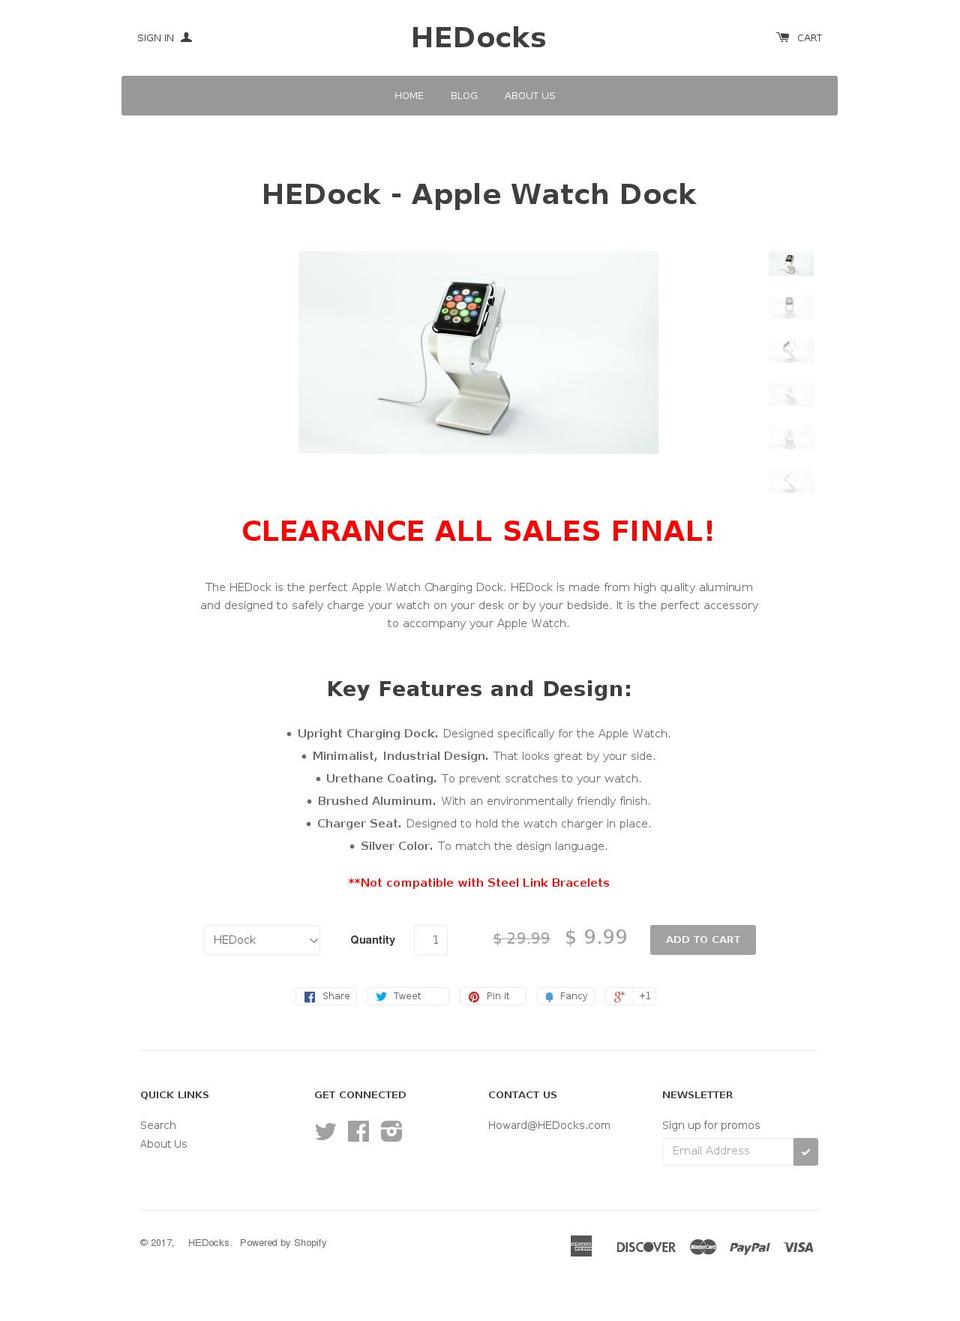 hedocks.com shopify website screenshot